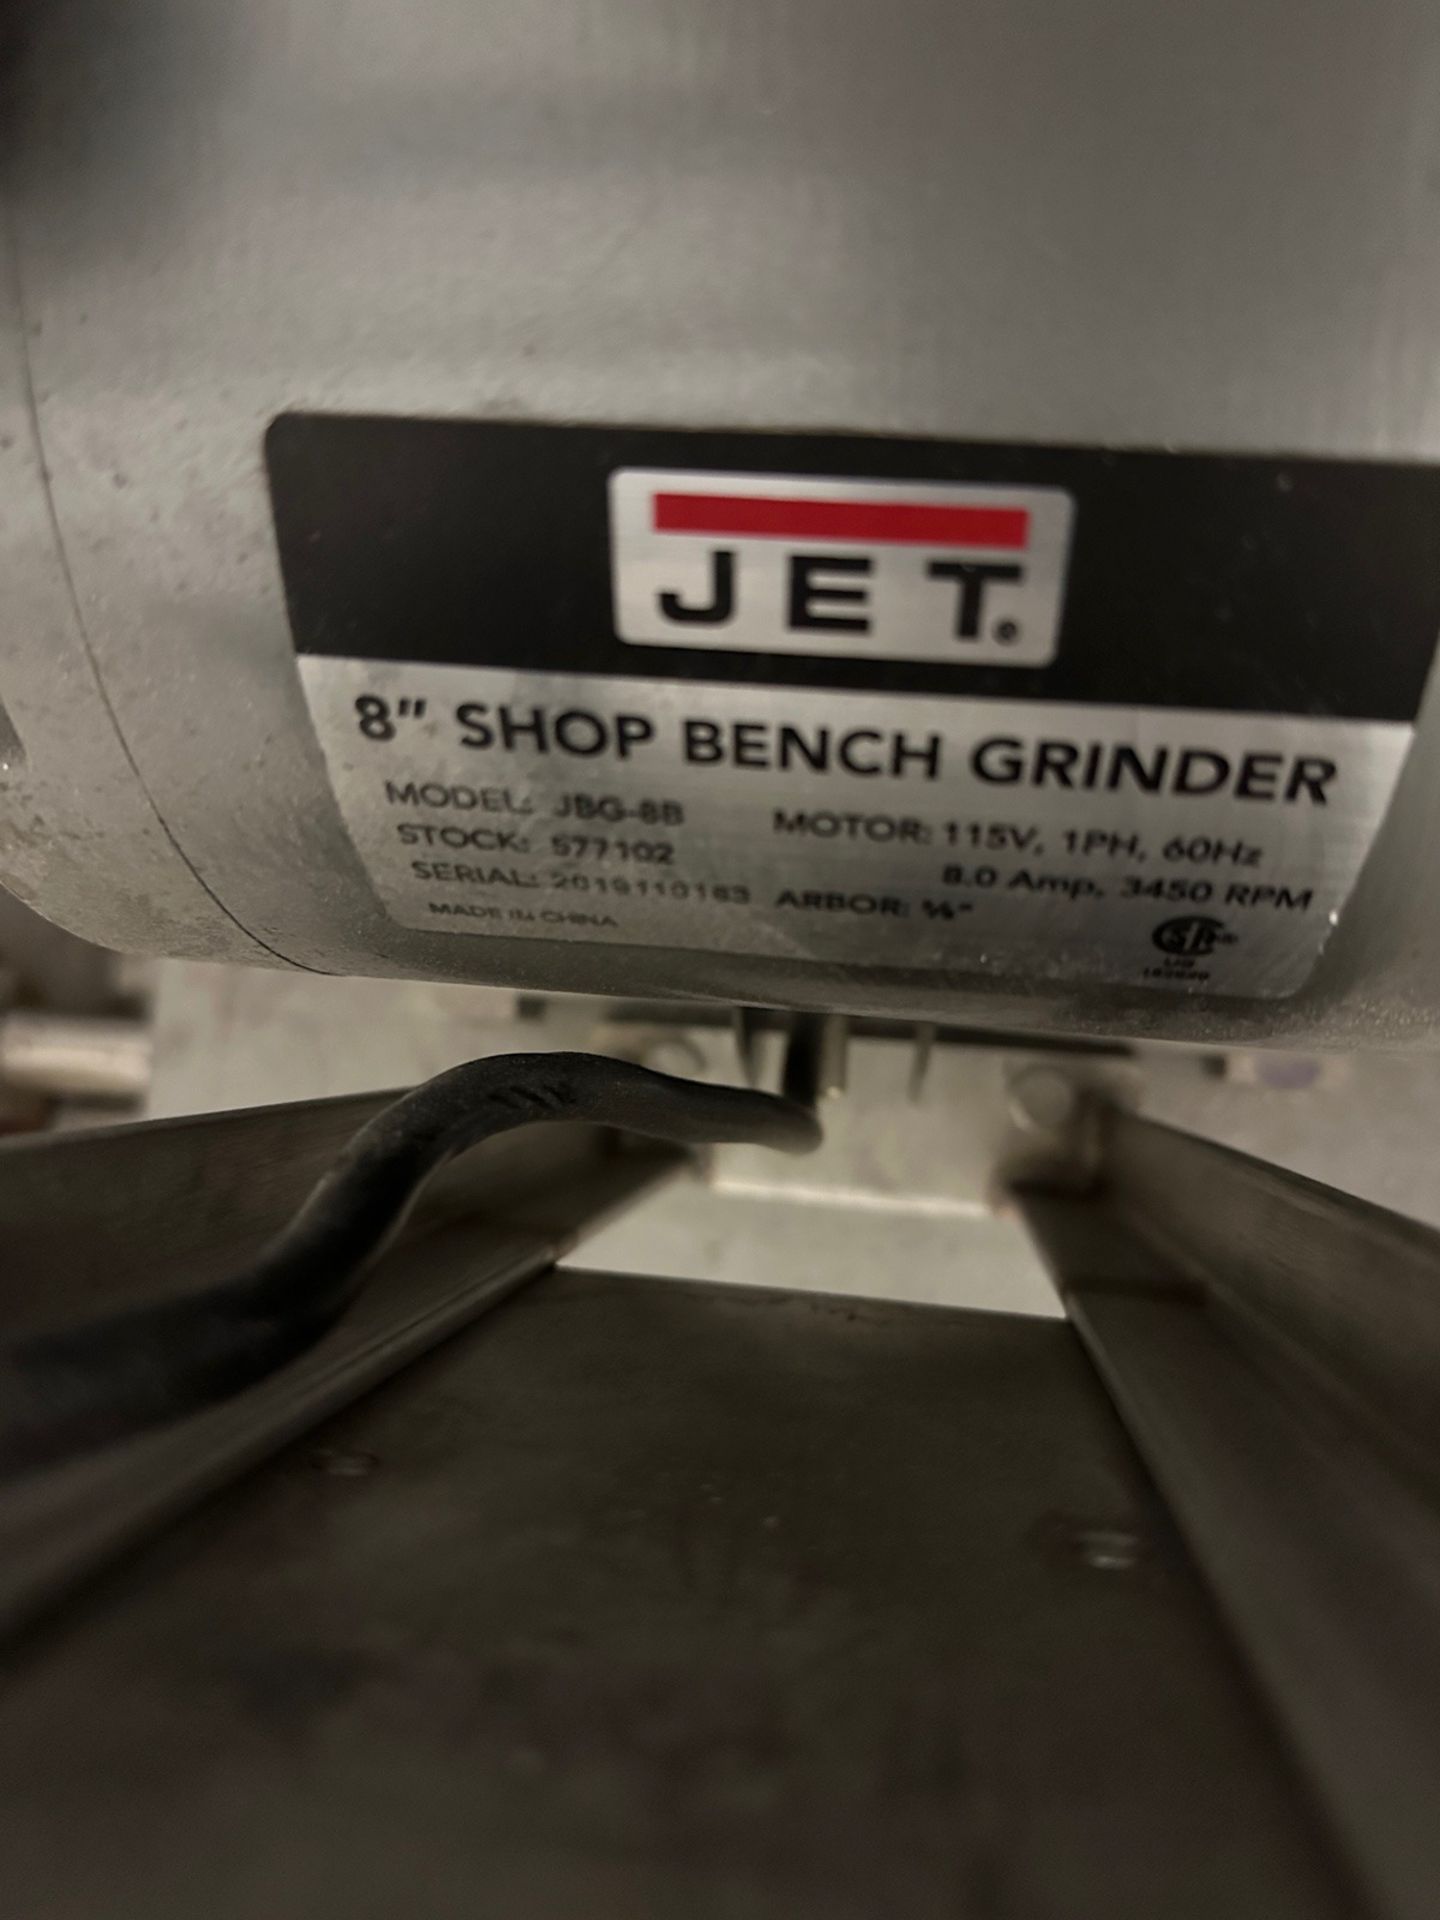 Jet 8" Shop Bench Grinder on Stainless Steel Frame - Image 3 of 3